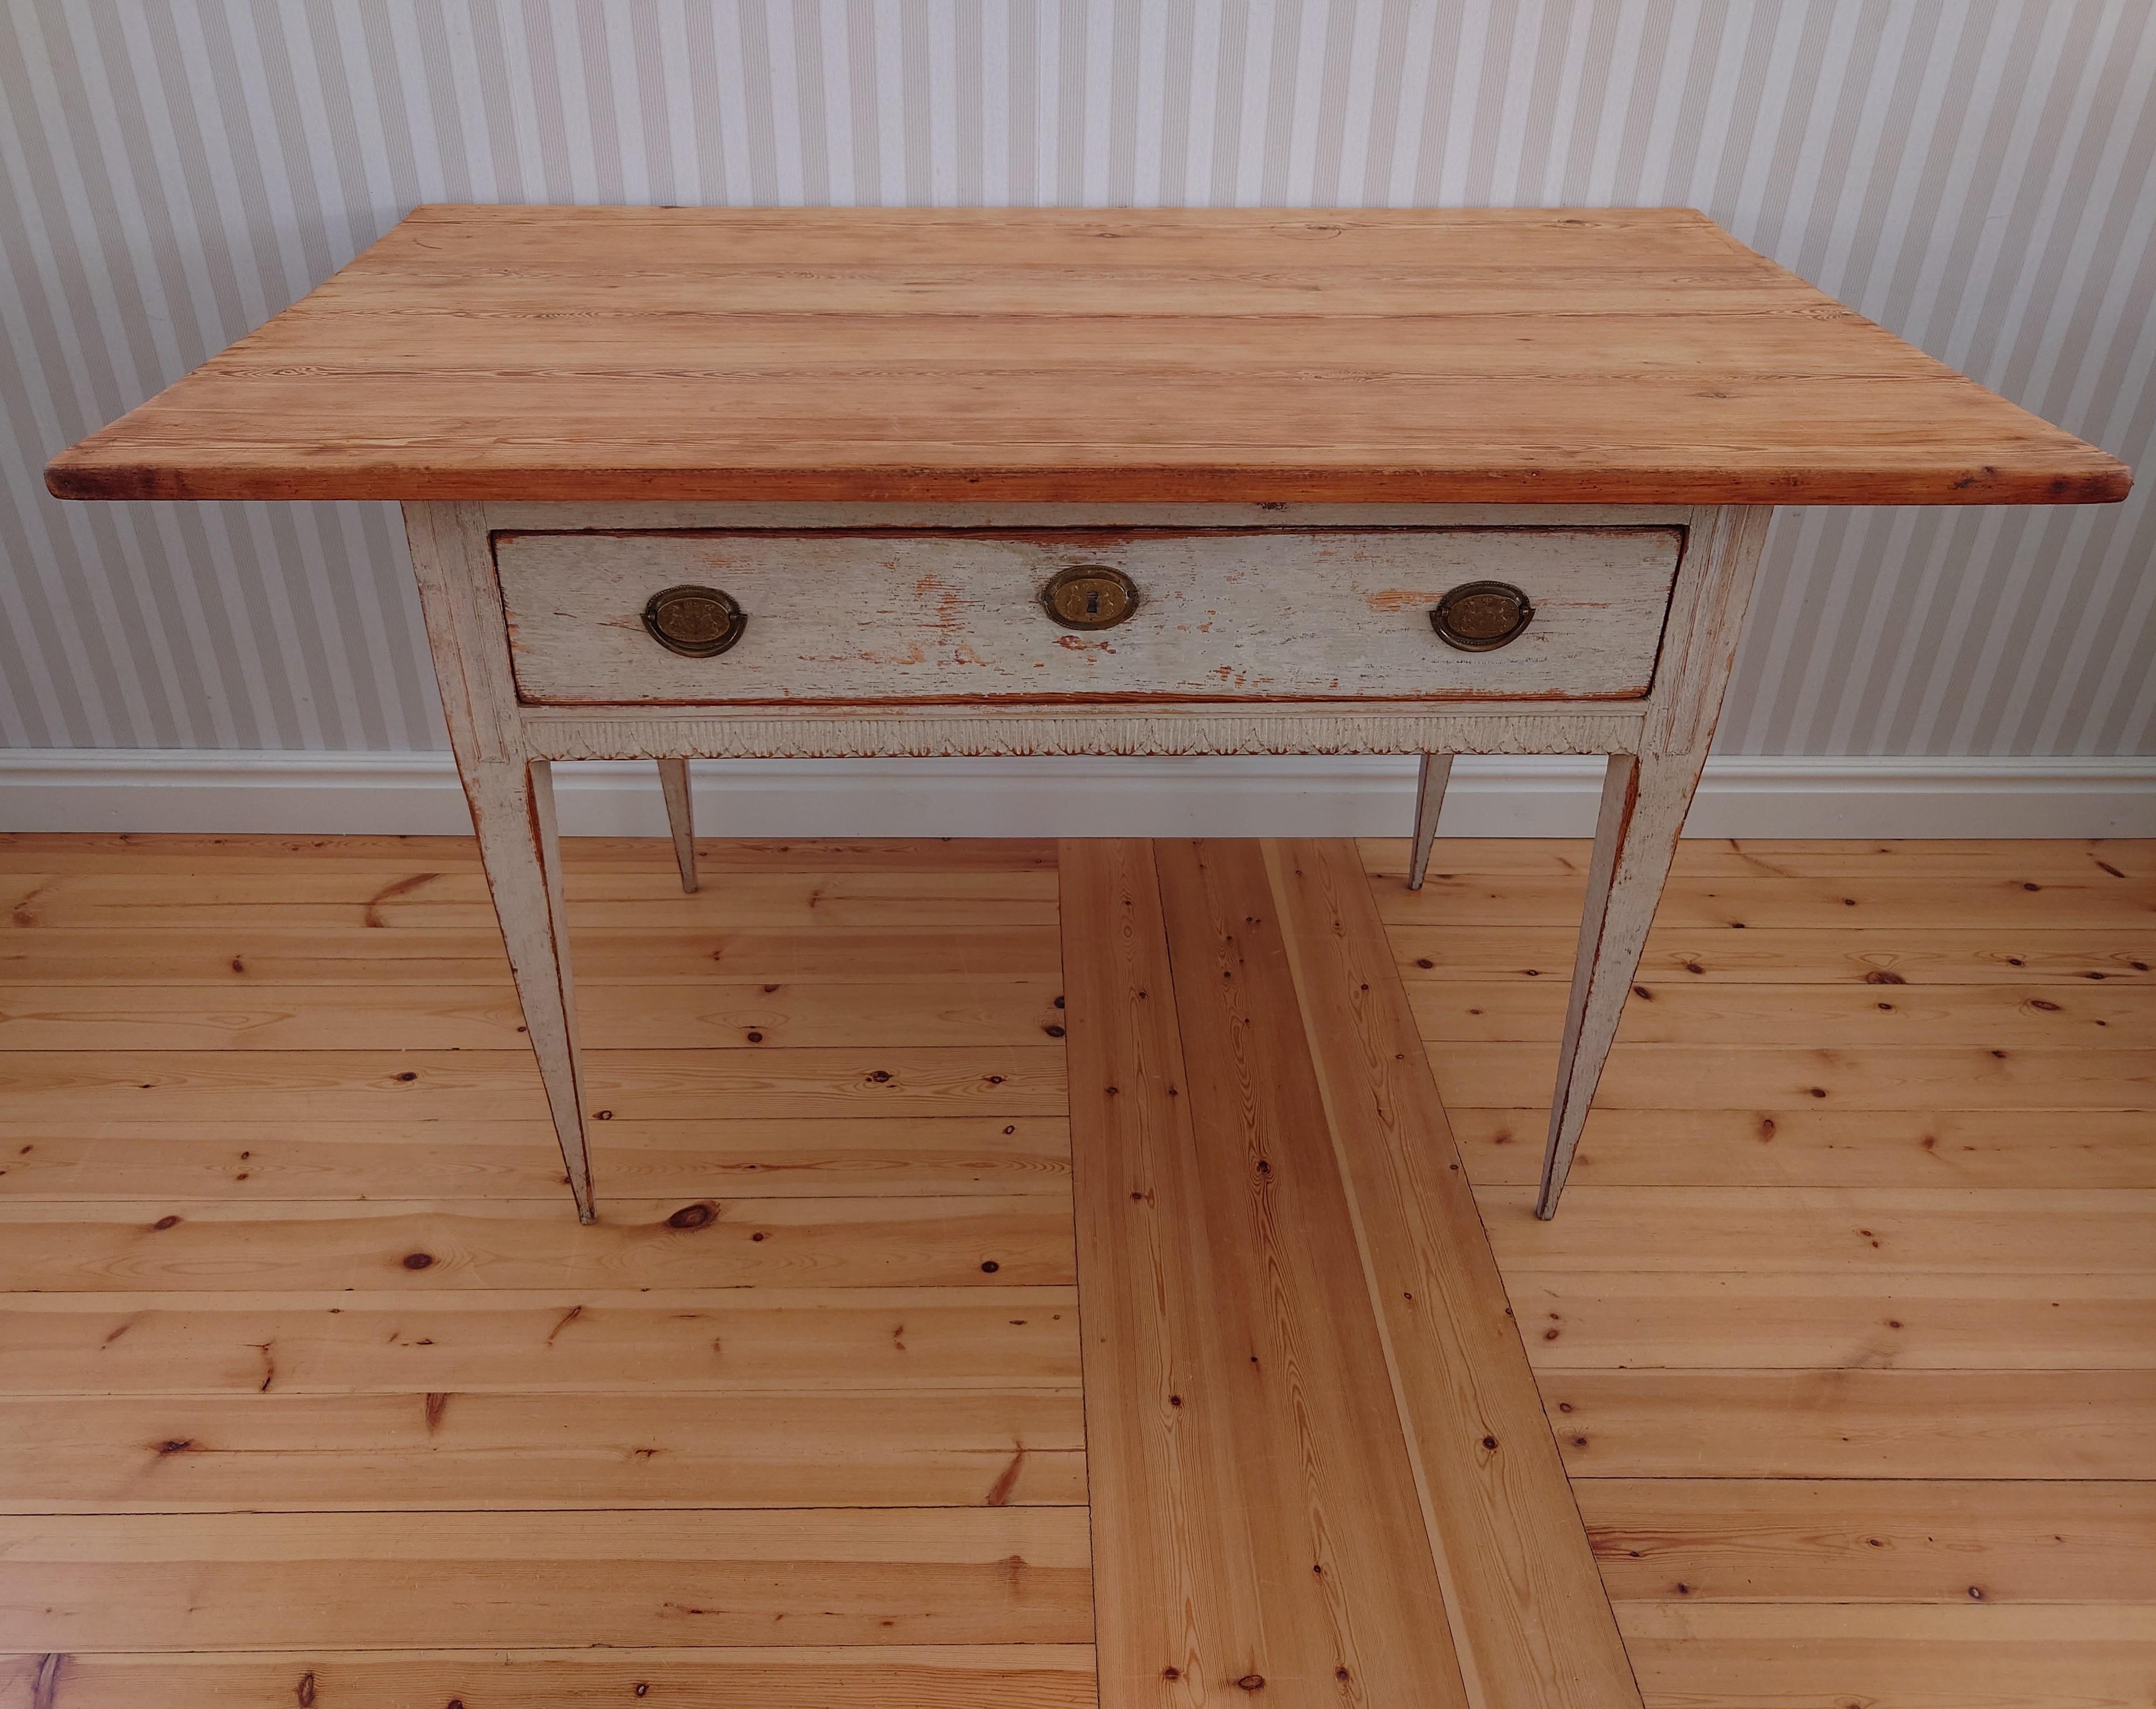 Schwedischer Gustavianischer Schreibtisch aus dem 19. Jahrhundert aus Umeå Västerbotten, Nordschweden.
Ein hochwertiger und schöner Schreibtisch mit holzgeschnittenen Details und schönen konisch zulaufenden Beinen.
Die schön geschnittenen Blätter